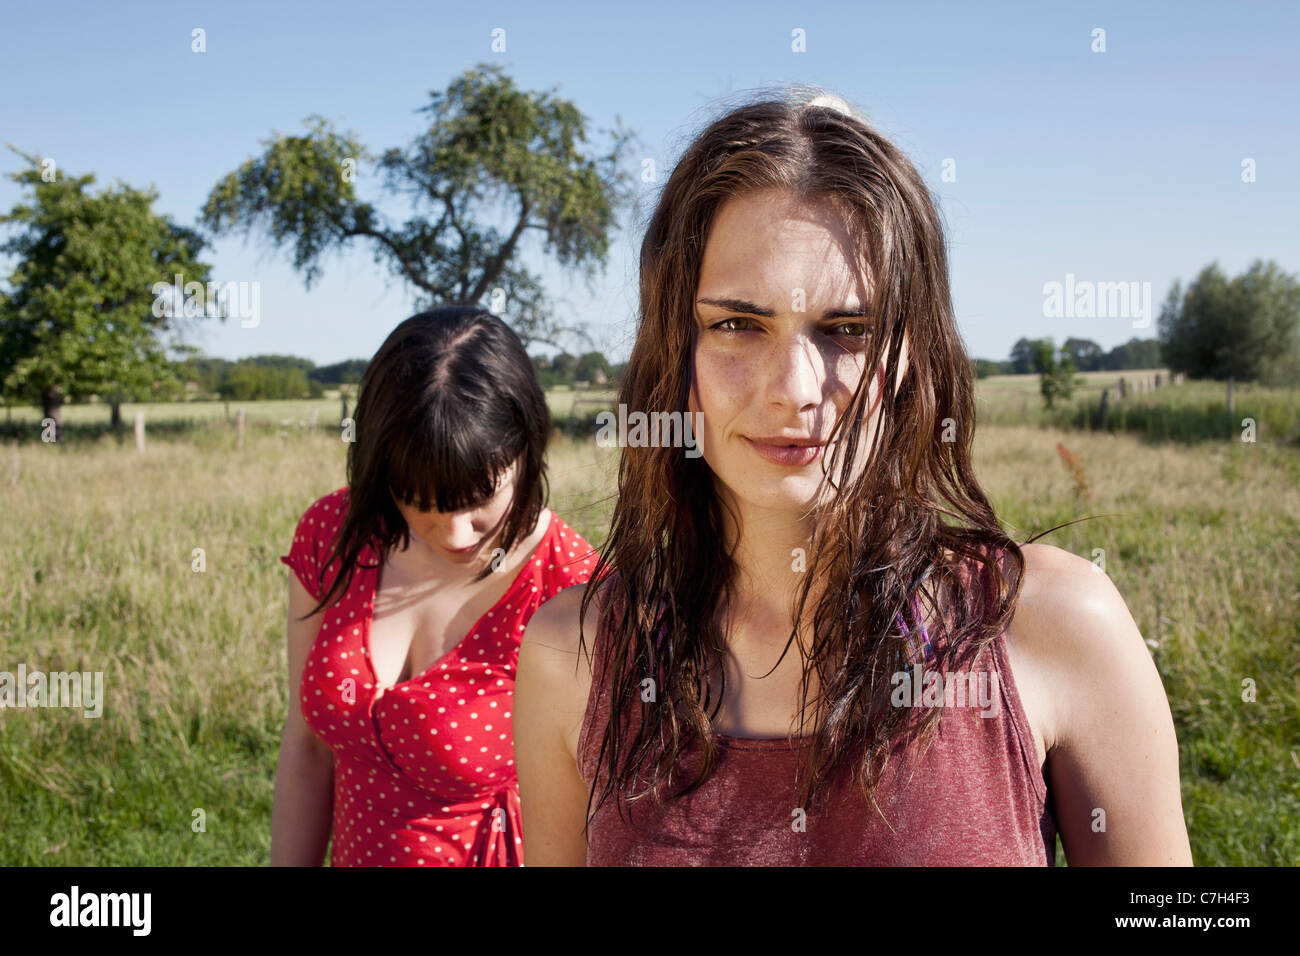 Zwei Coole Madchen Im Feld Stehen Mit Einem Blick In Die Kamera Stockfotografie Alamy